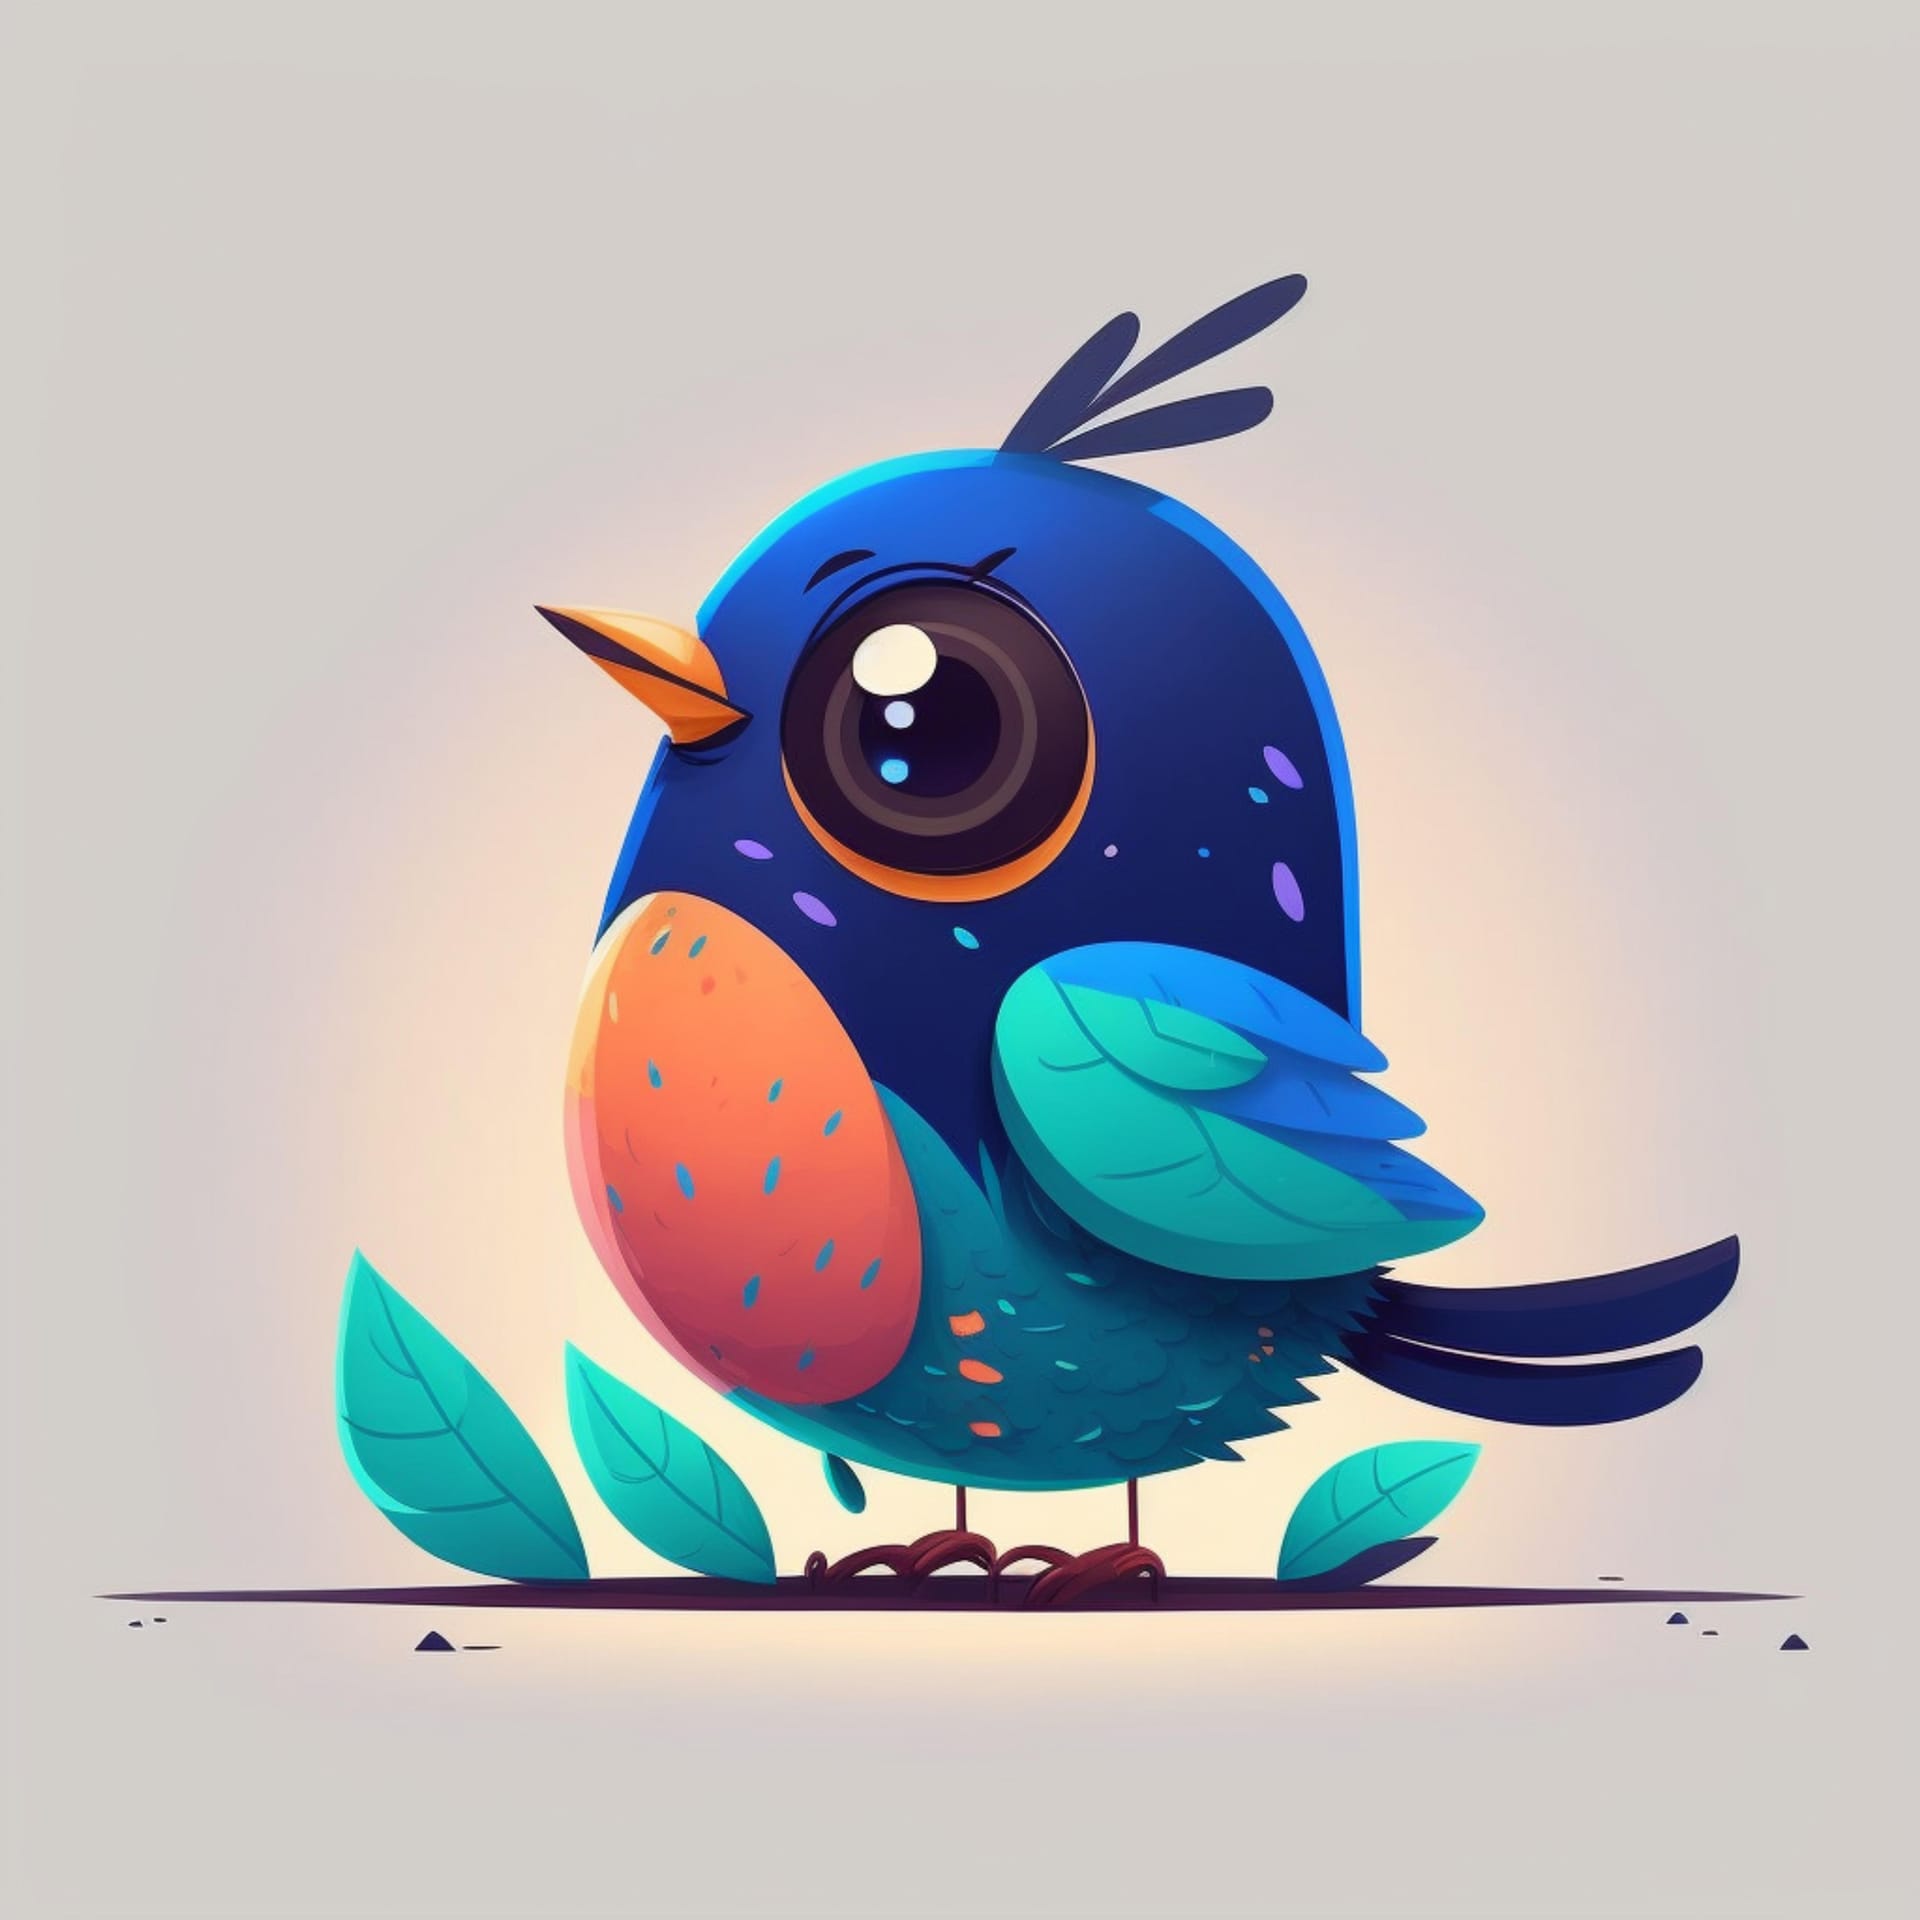 Bird profile picture cute cartoon bird illustration image